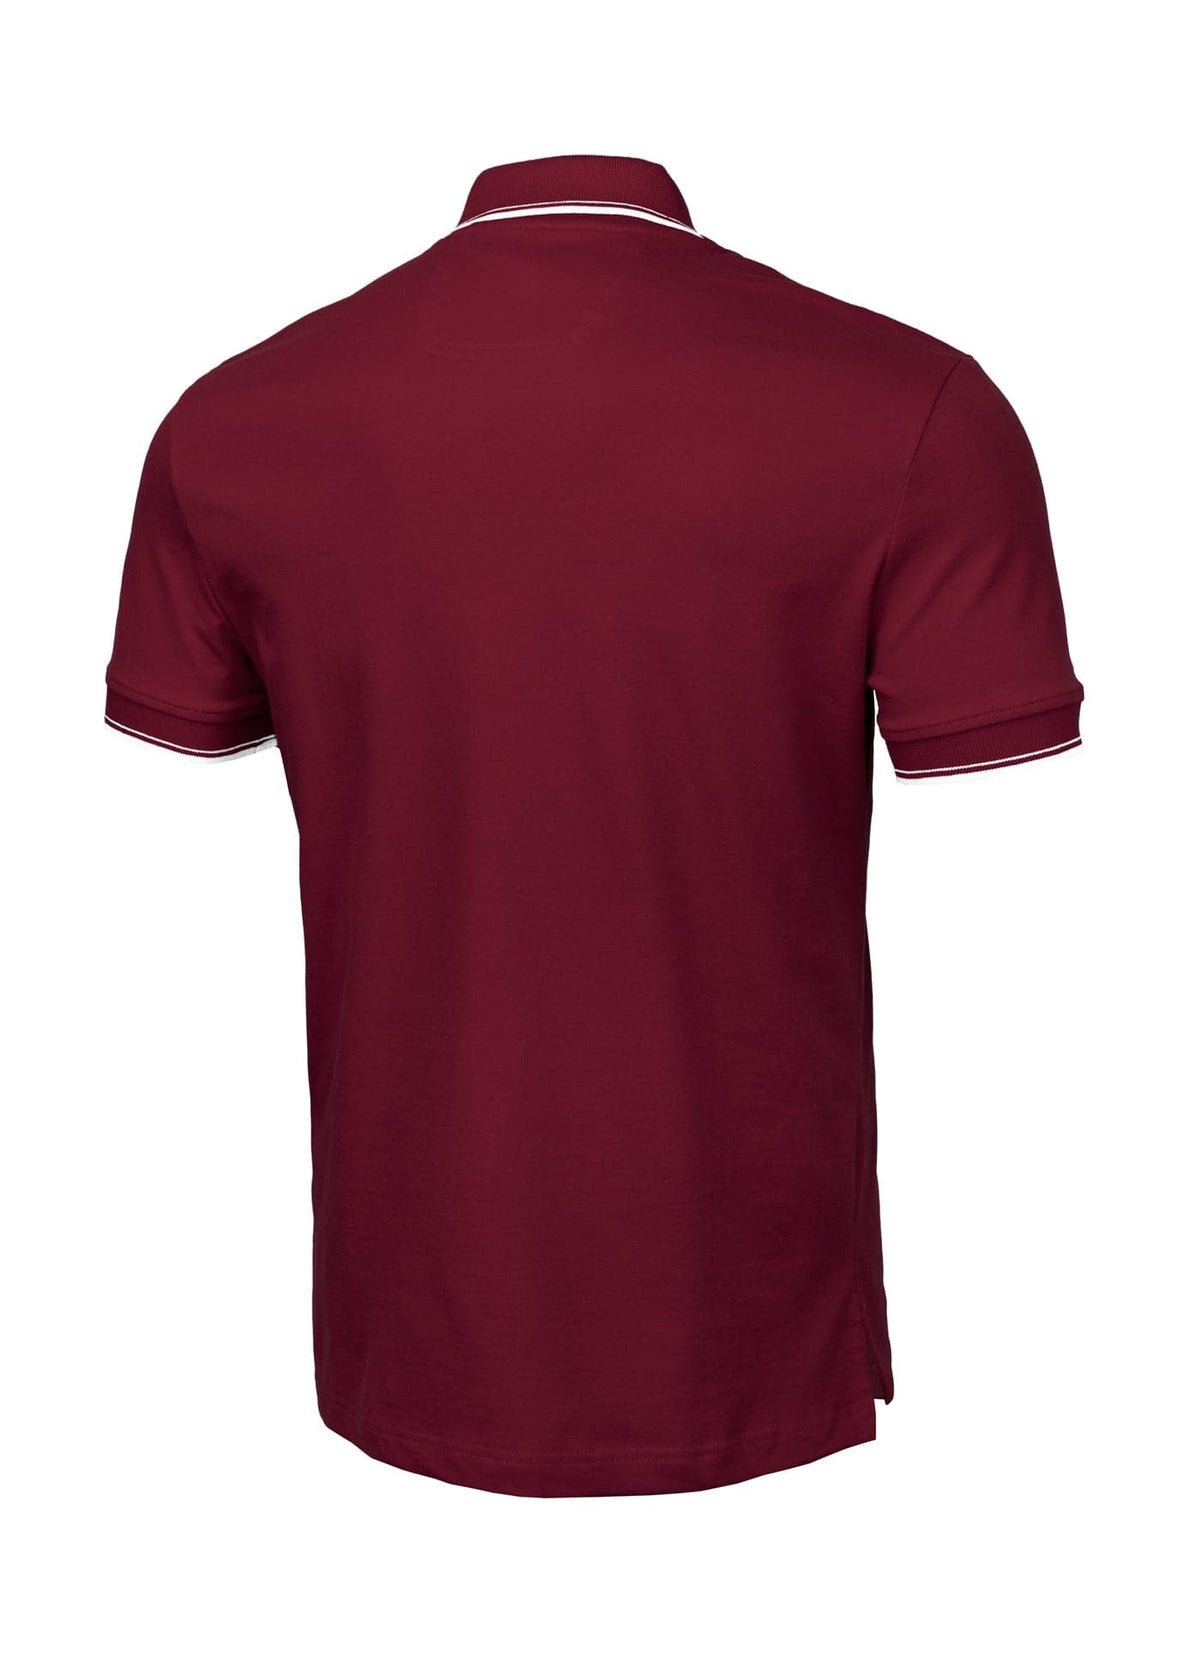 PIQUE STRIPES REGULAR Burgundy Polo T-shirt - Pitbullstore.eu